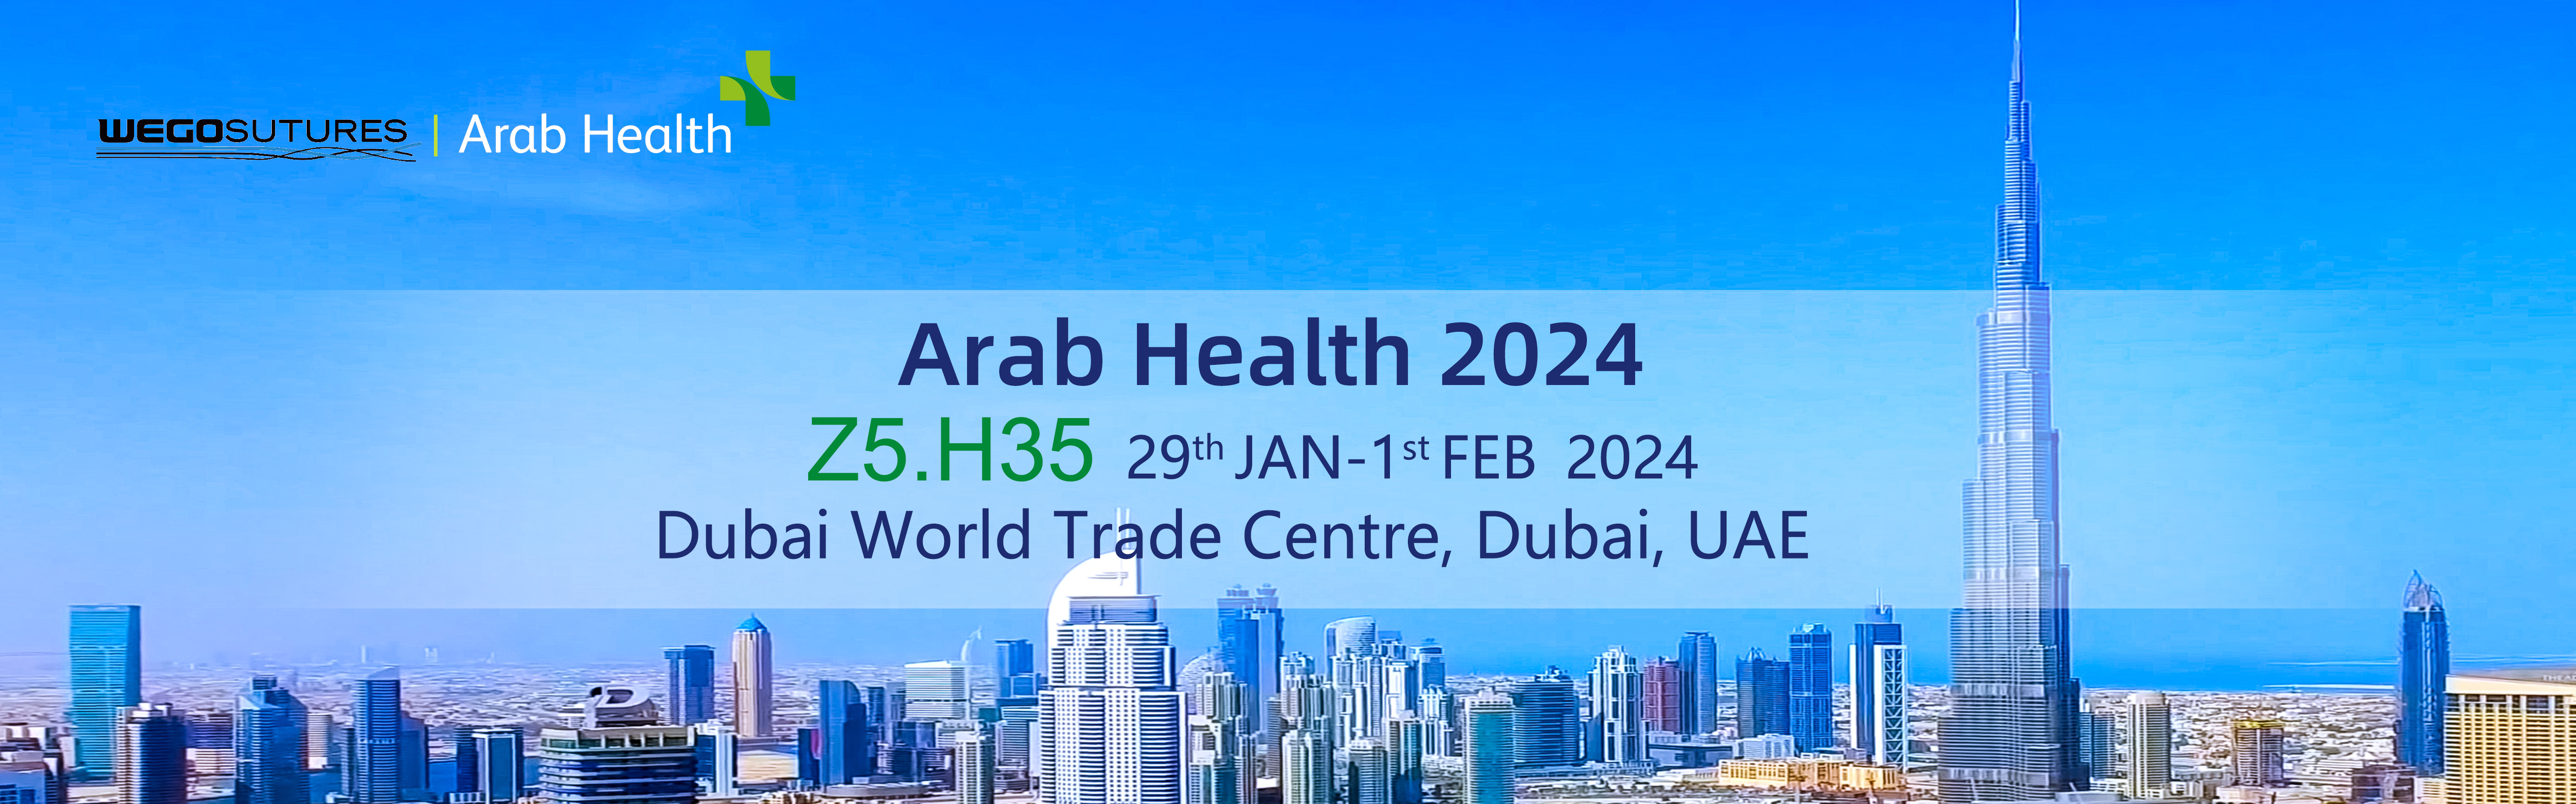 الصحة العربية 2024، مرحباً بزيارتك